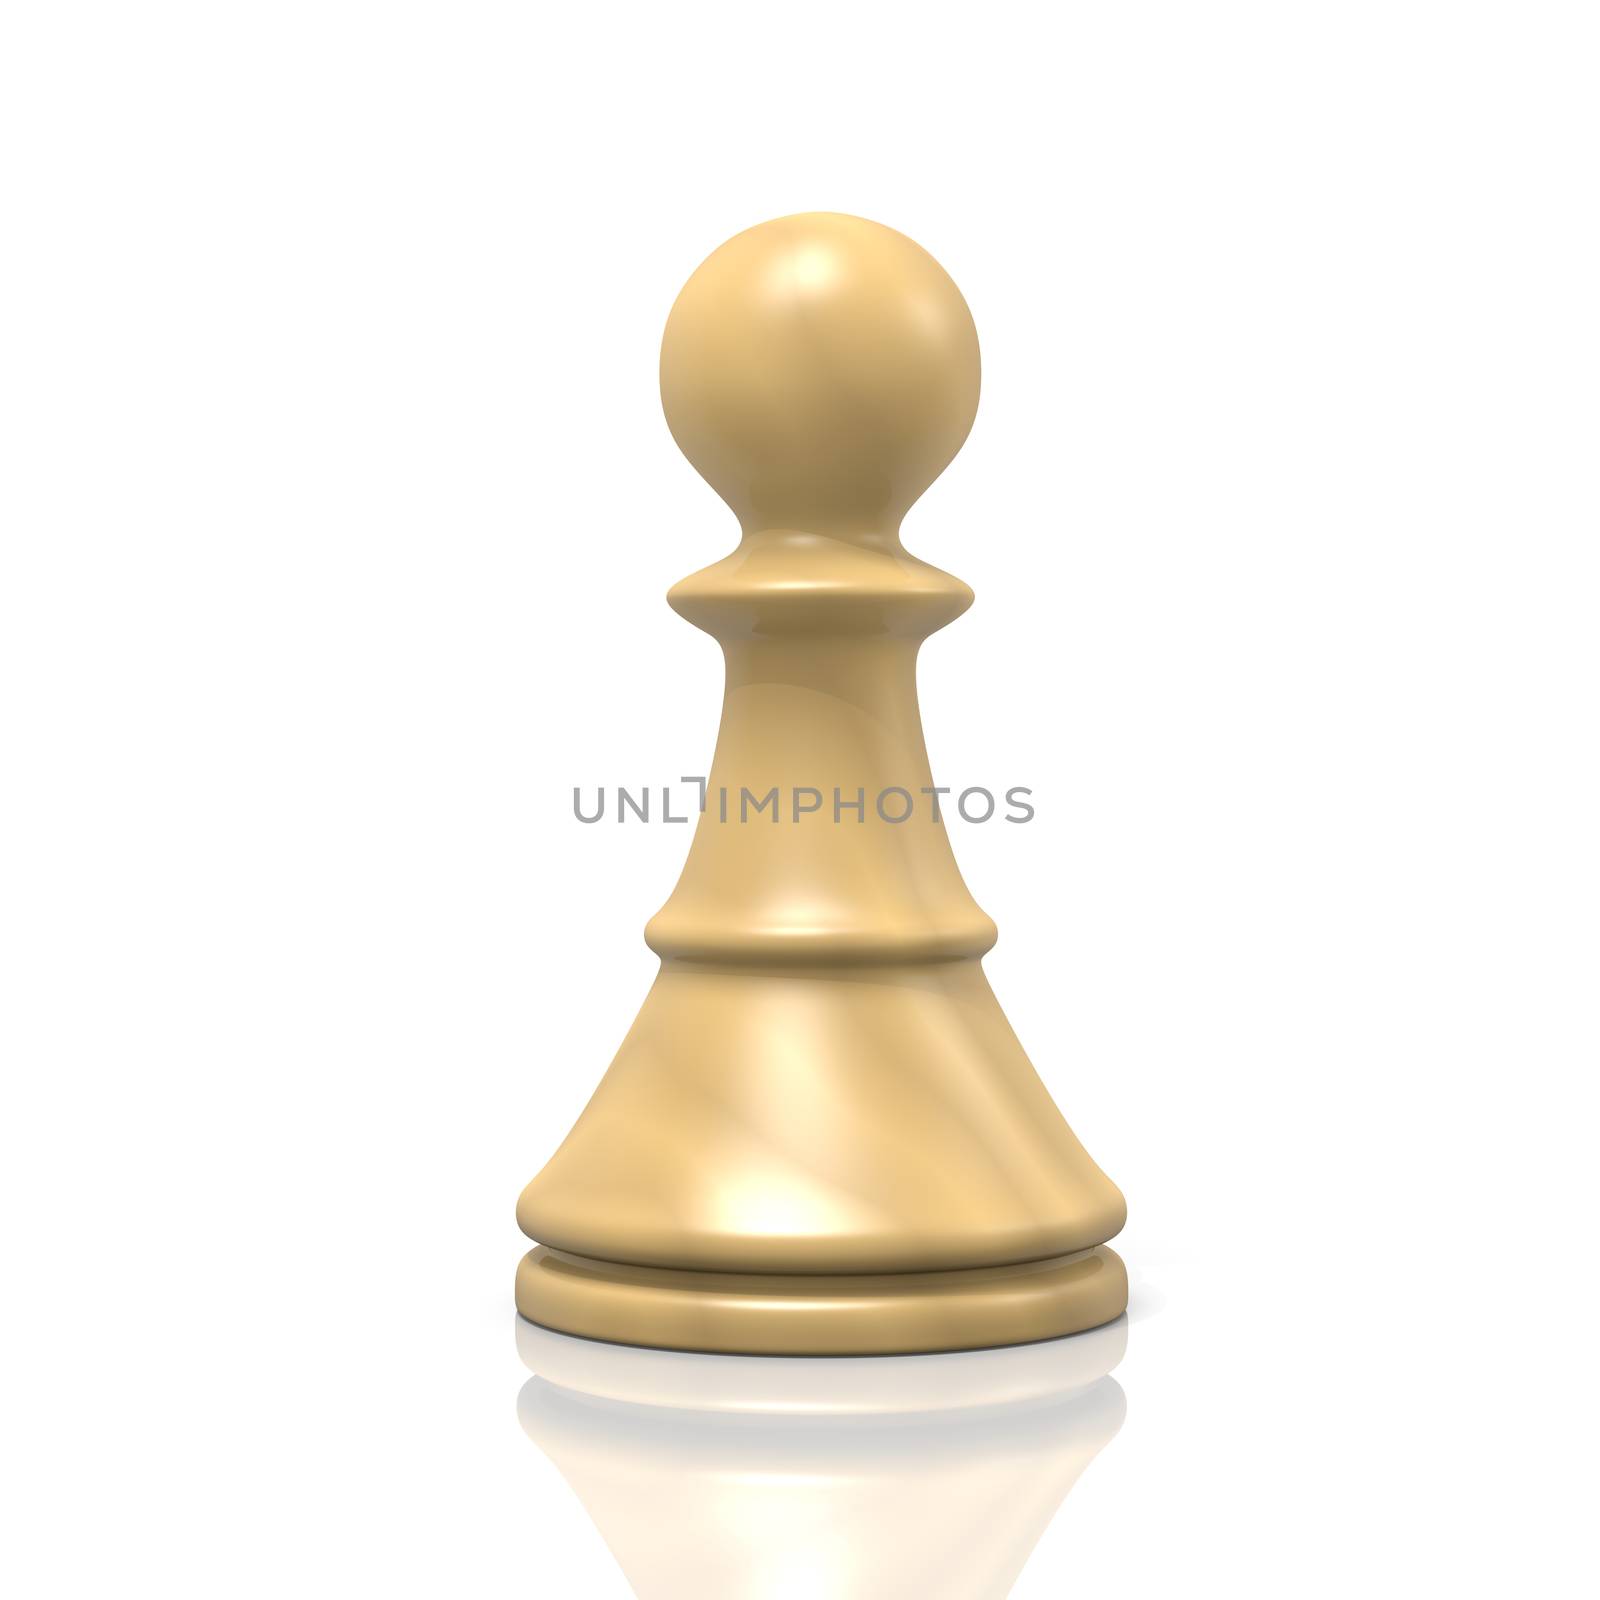 Single Isolated White Wood Chessman on White Background